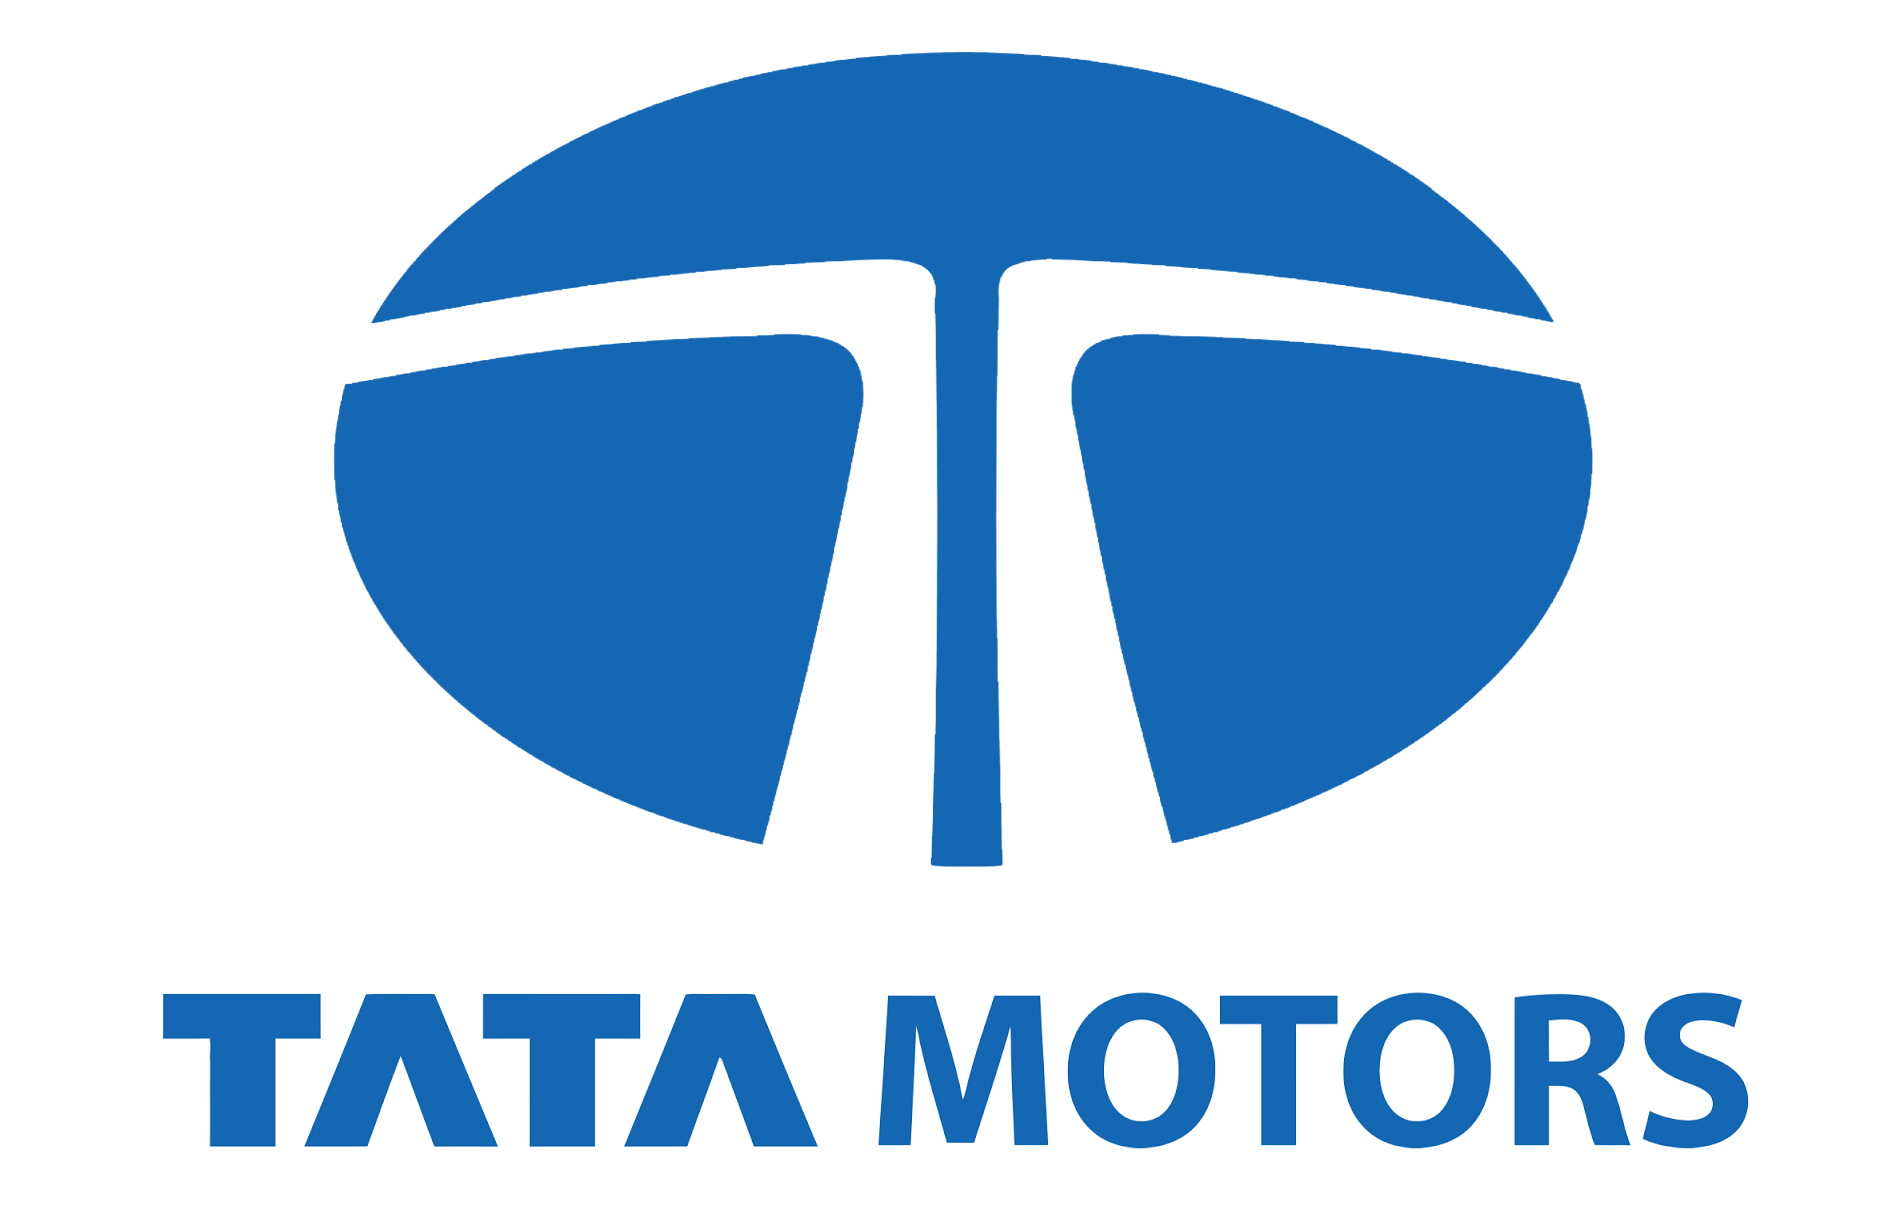 Tata Motors Cars Showroom - Aspire Motors|Show Room|Automotive